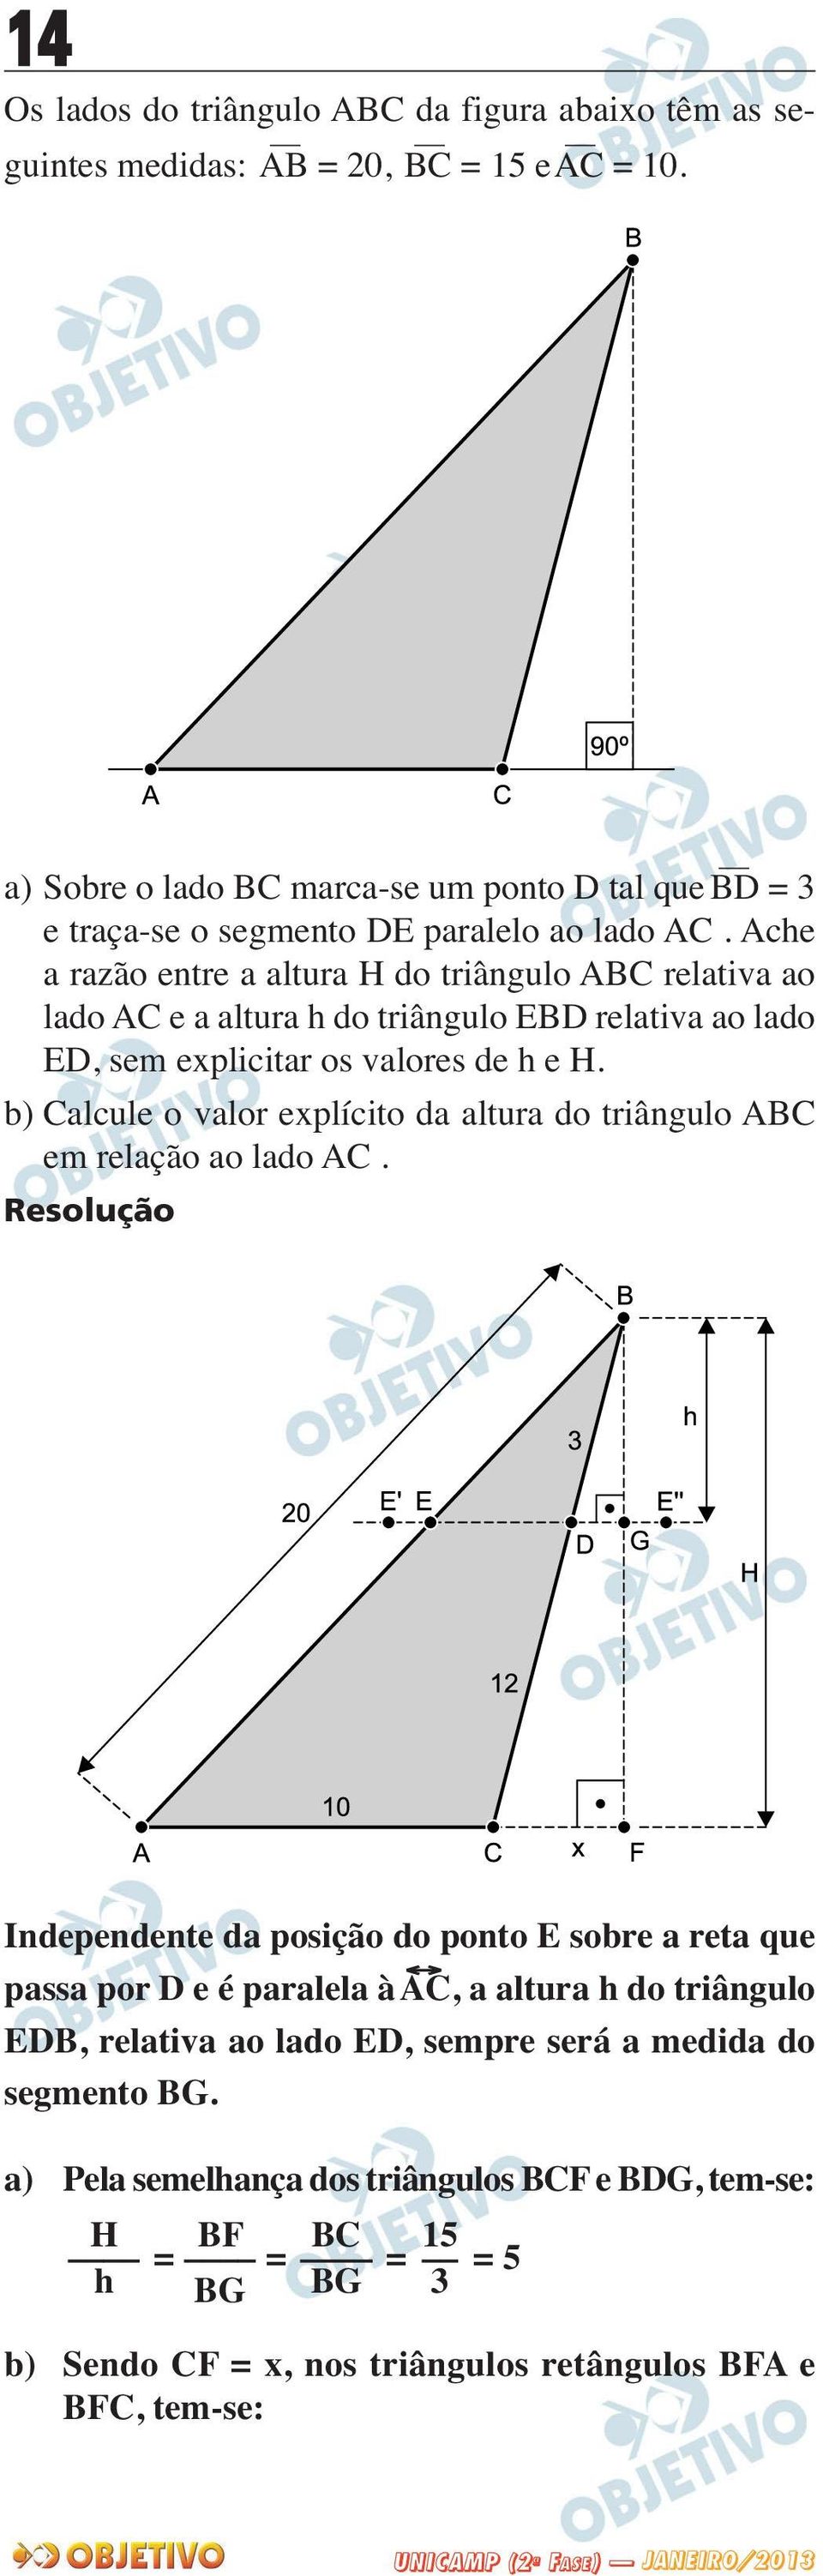 Ache a razão entre a altura H do triângulo ABC relativa ao lado AC e a altura h do triângulo EBD relativa ao lado ED, sem explicitar os valores de h e H.